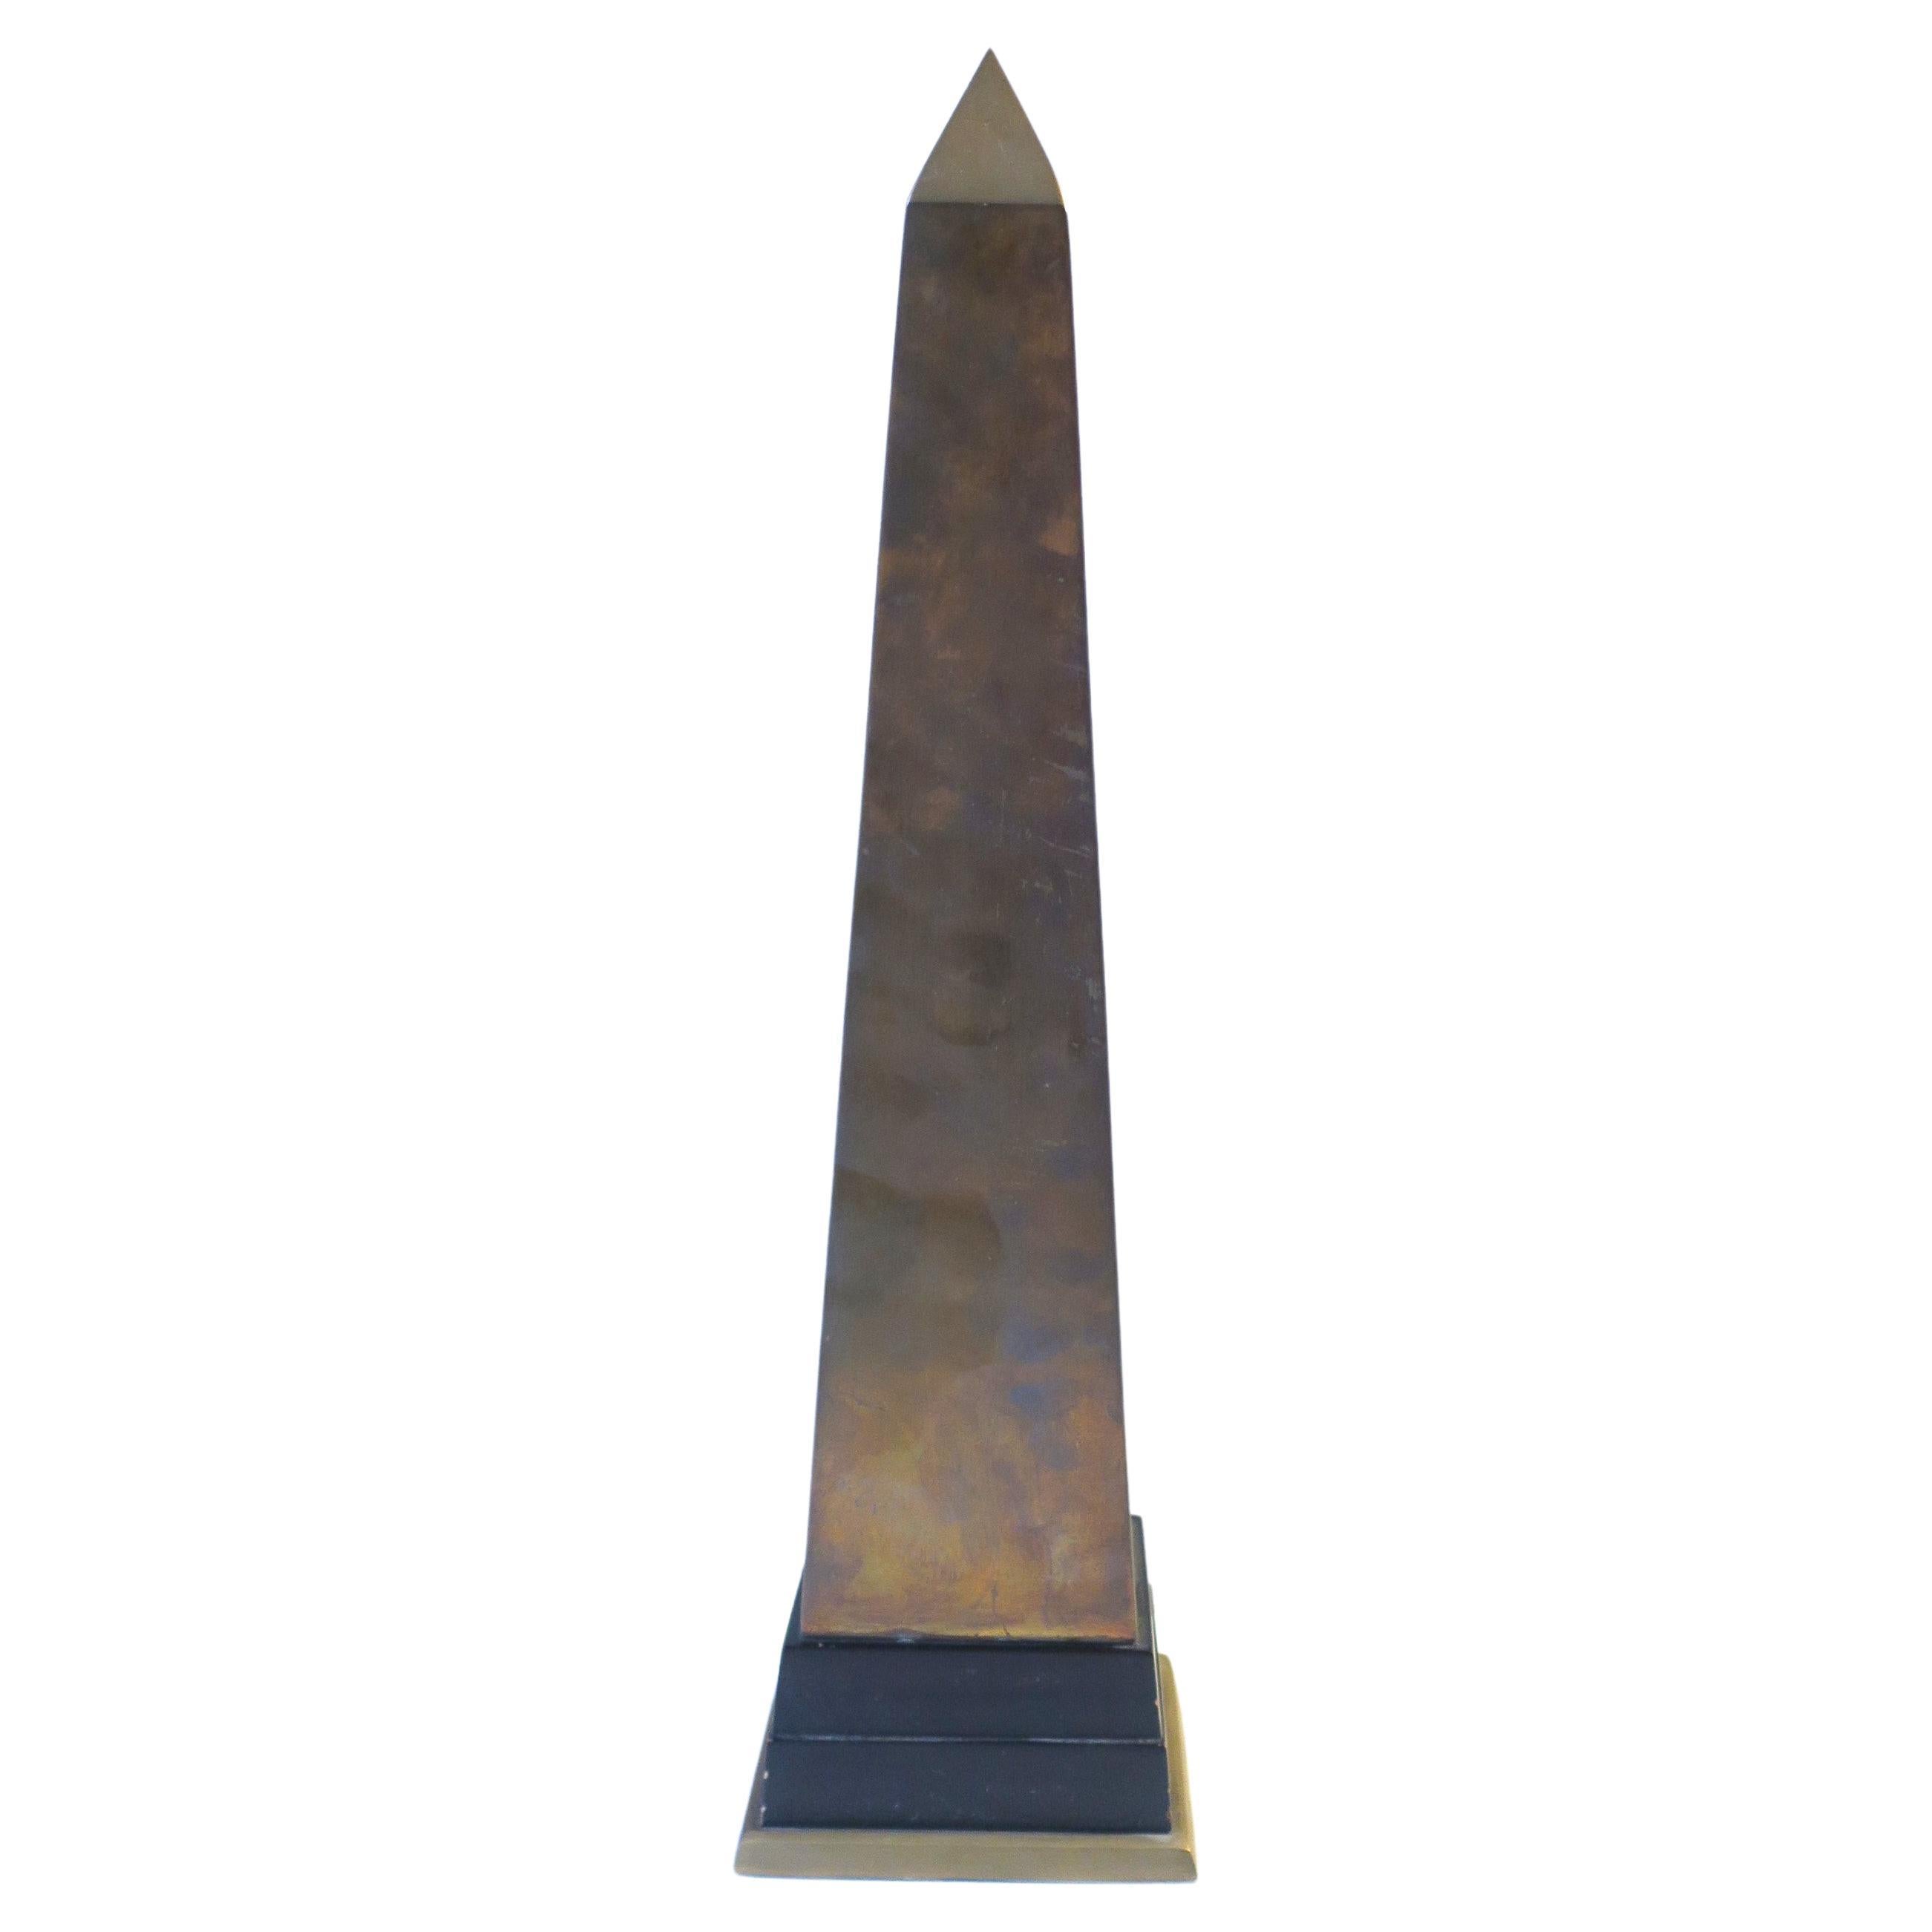 Messing-Obelisk, groß